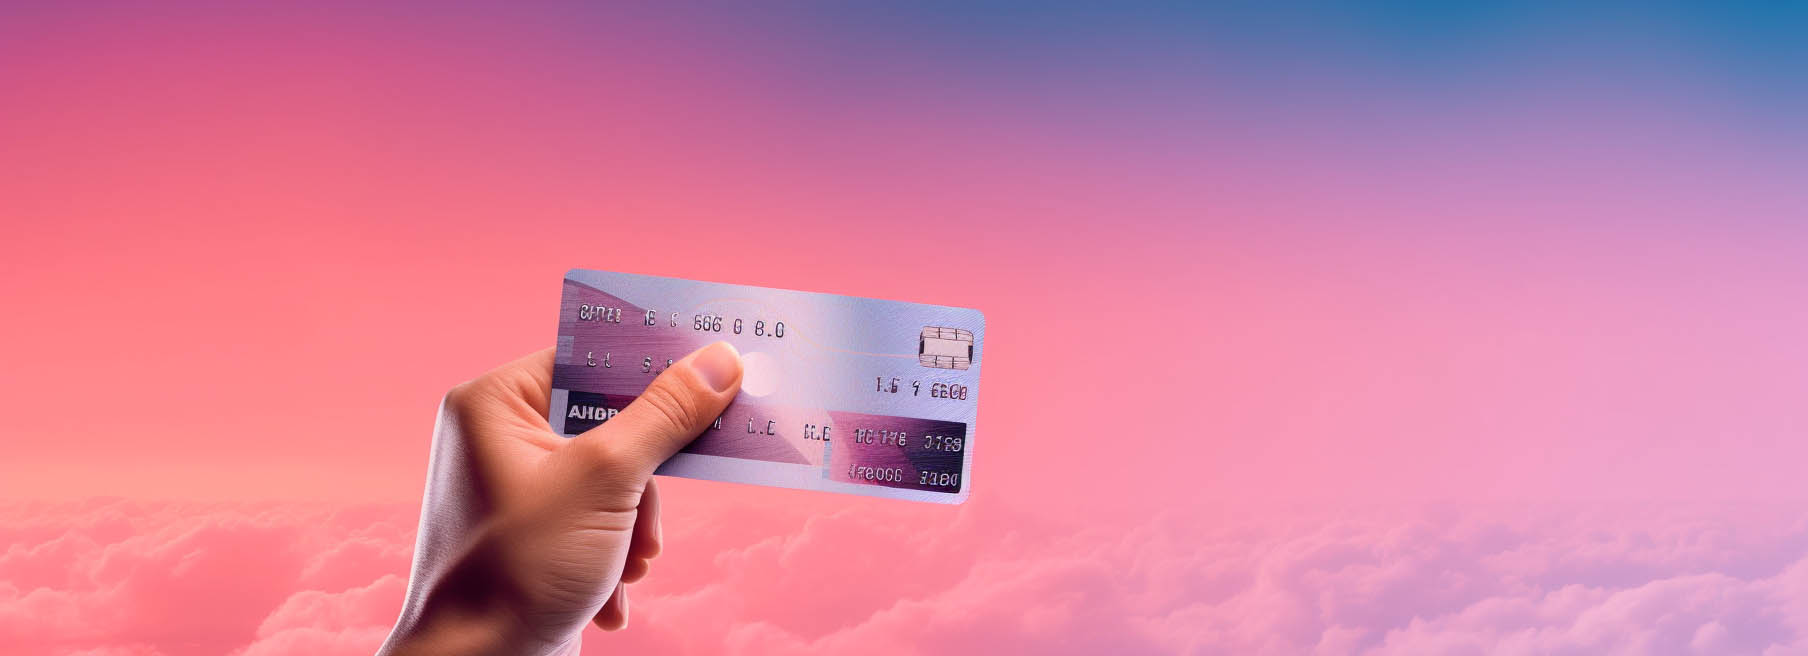 Kreditkarte nutzen und beim Reisen sparen